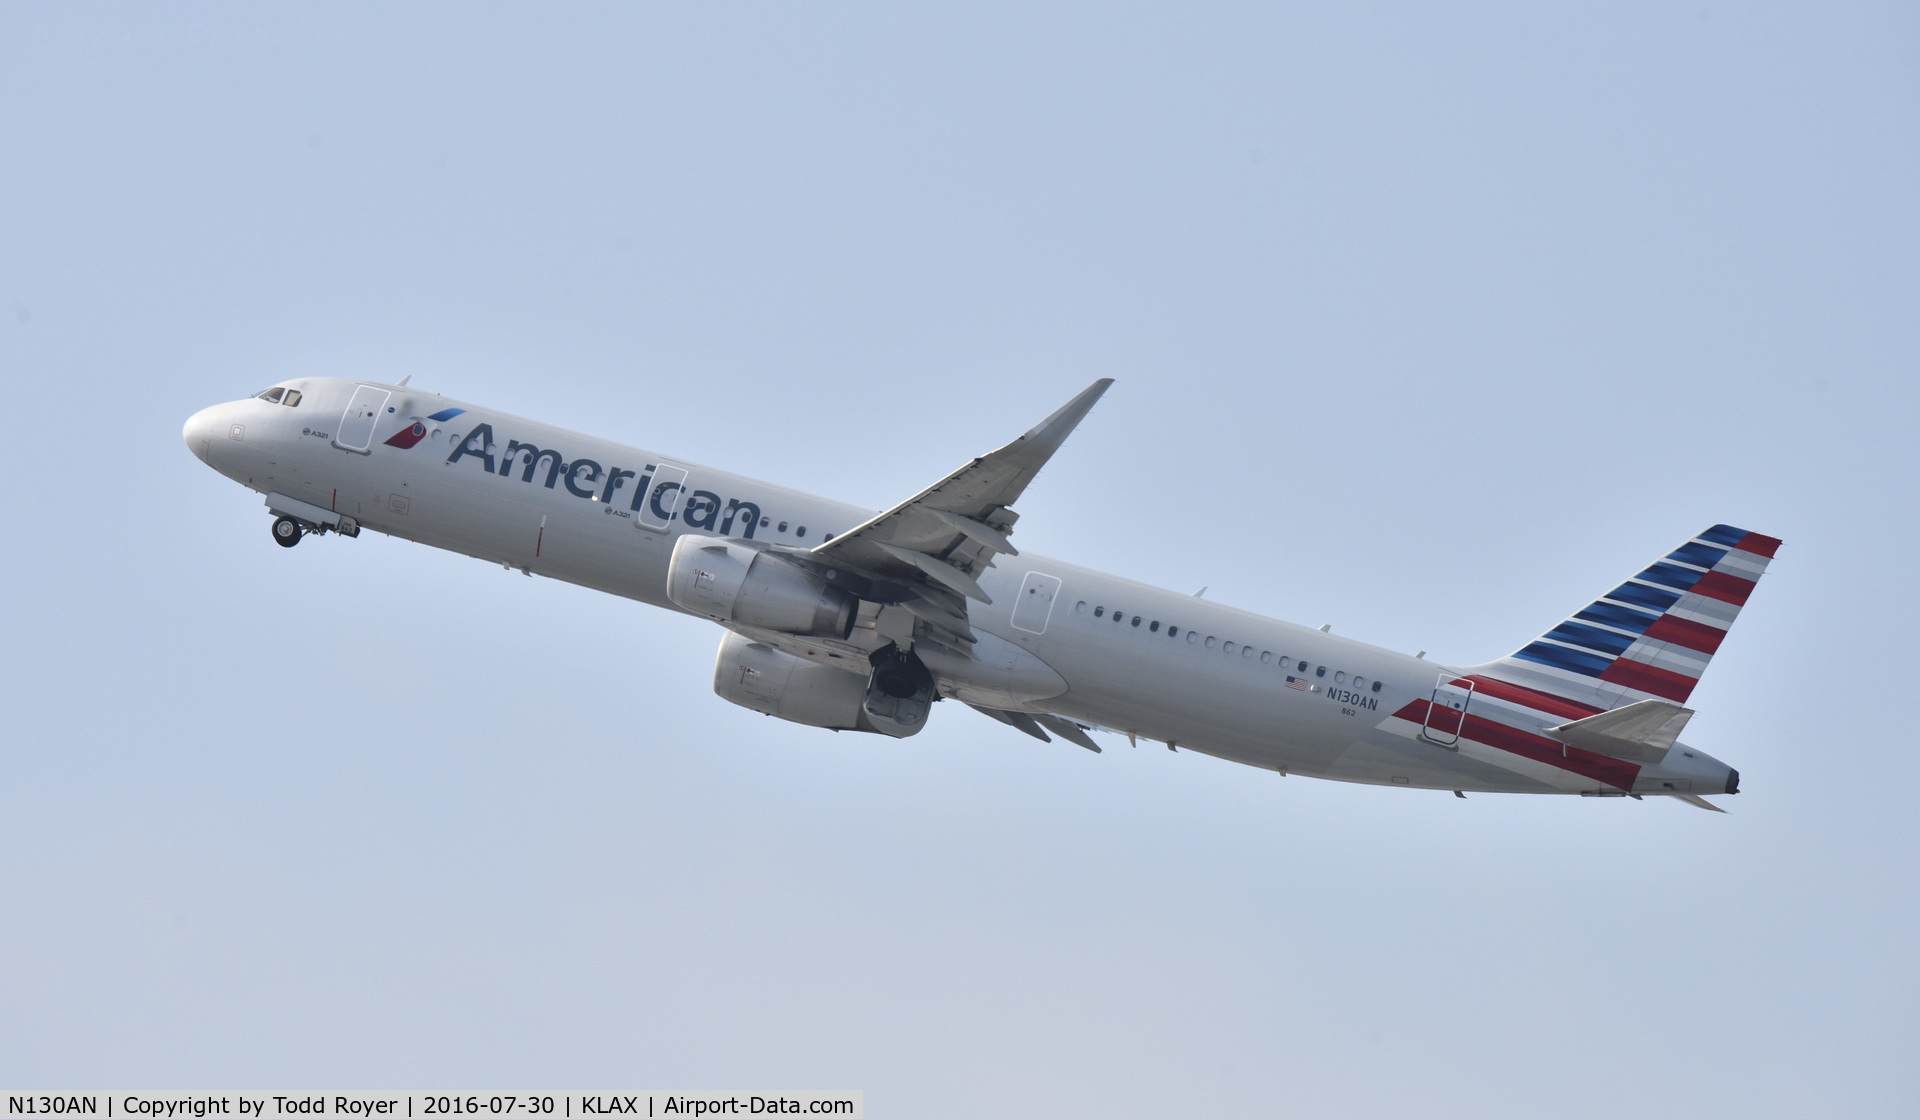 N130AN, 2014 Airbus A321-231 C/N 6407, Departing LAX